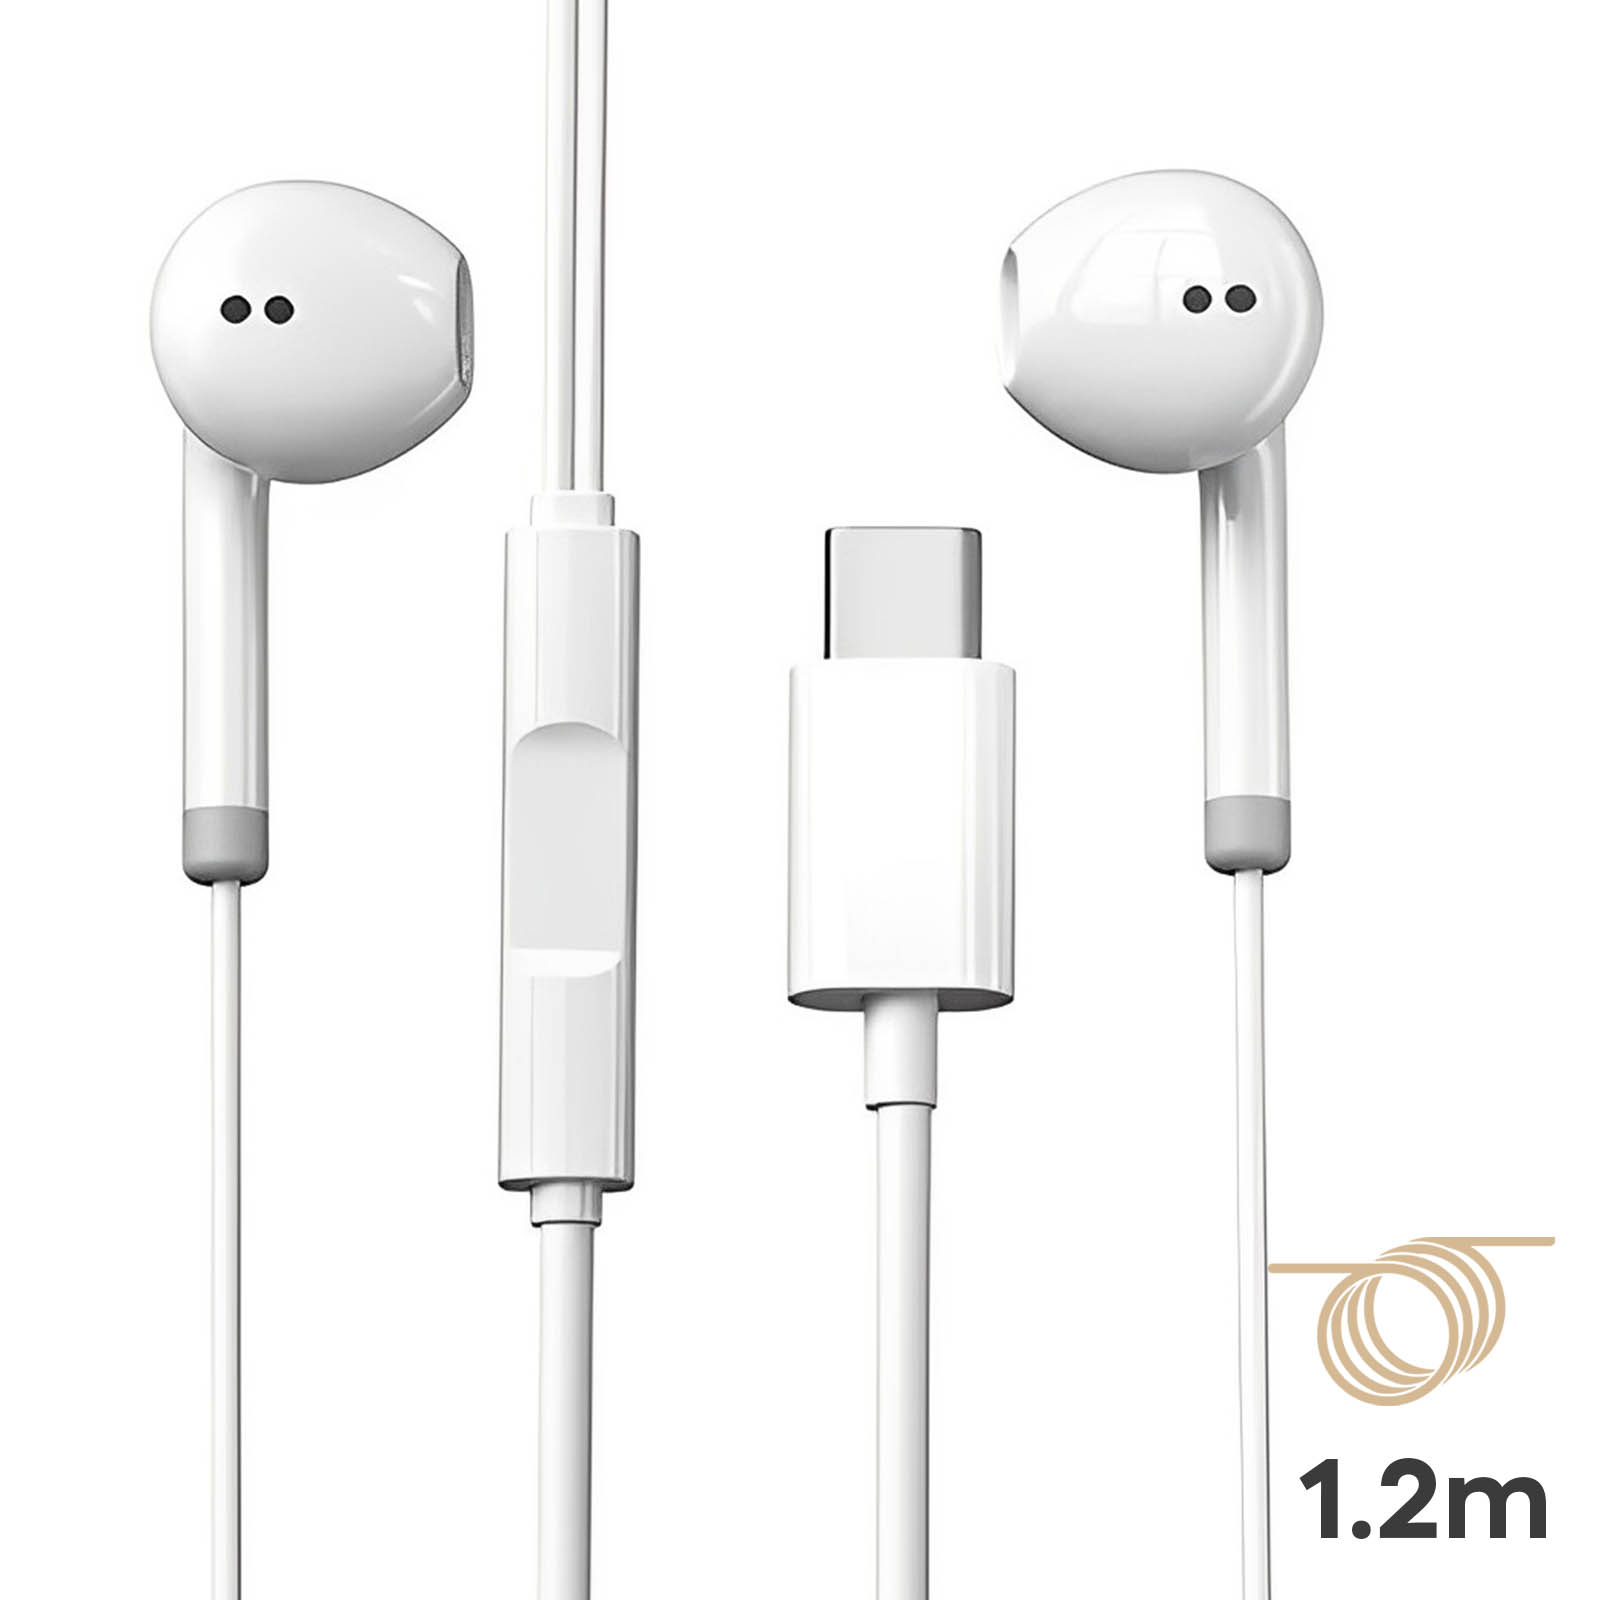 Écouteurs USB C Fonction Kit Mains Libres Longueur 1,2m - Blanc